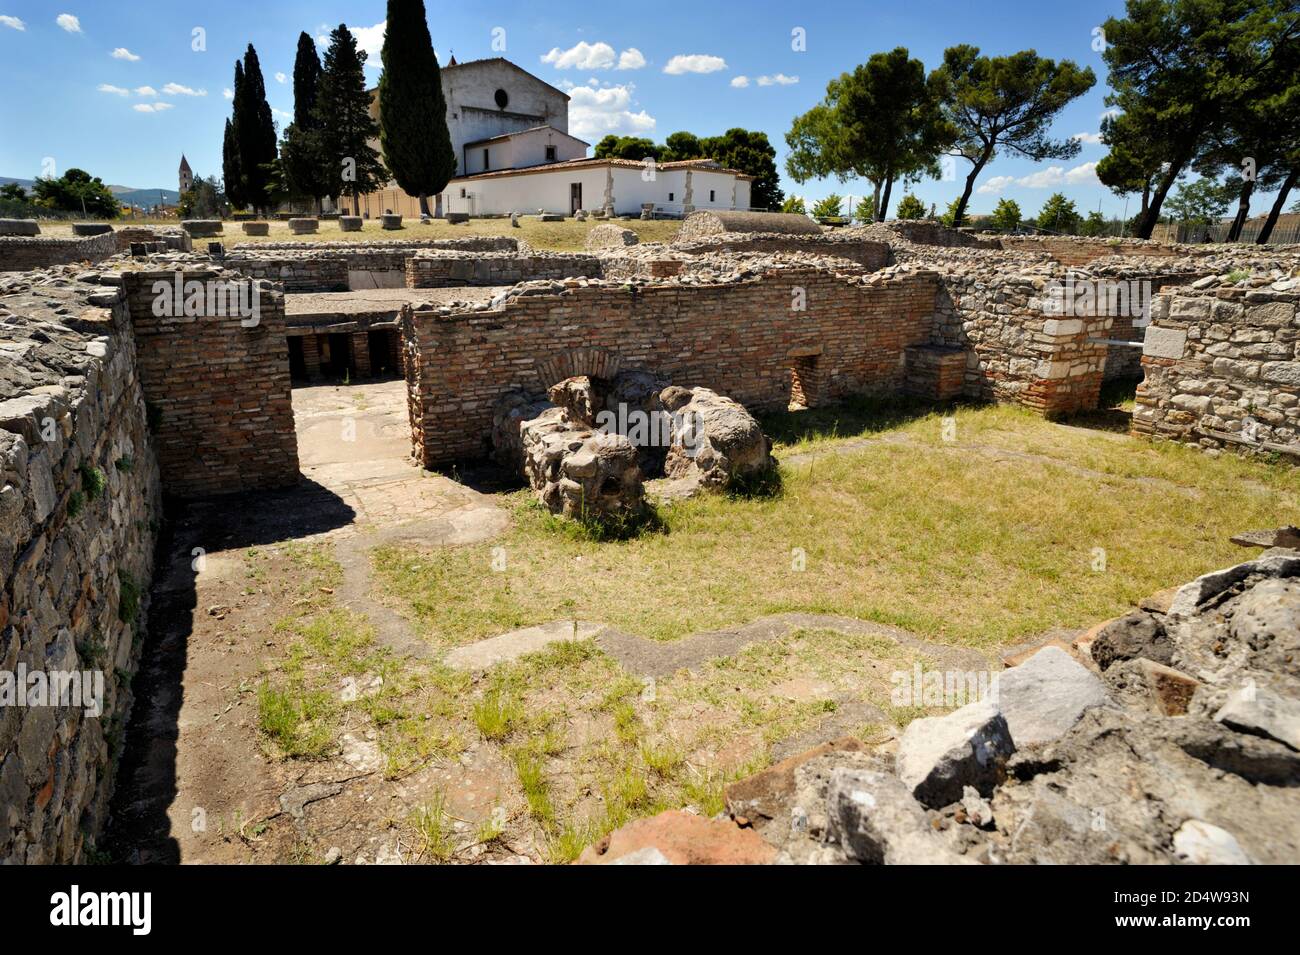 Italien, Basilikata, Venosa, archäologischer Park, römische Häuser Ruinen Stockfoto